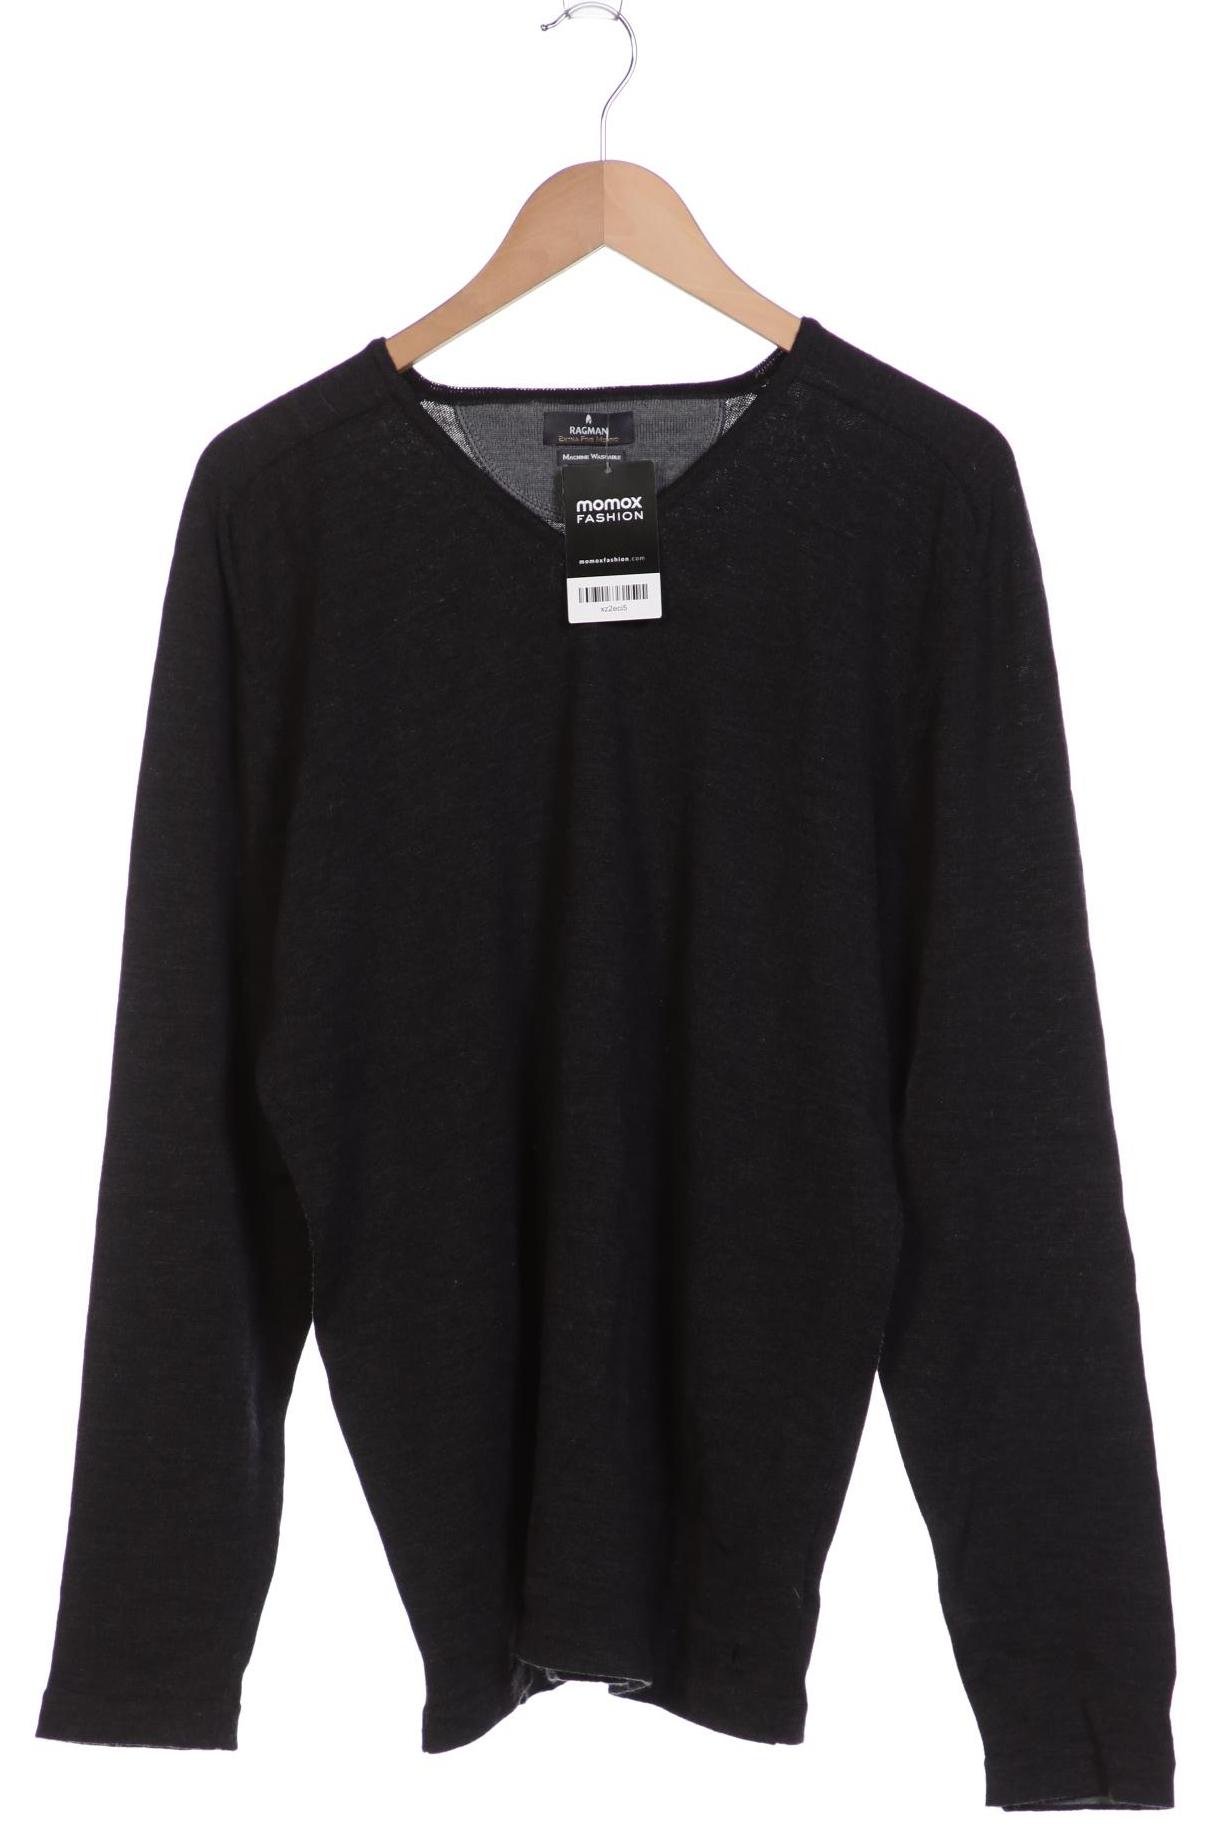 ragman | kaufen XXL Second Pullover Herren fashion Hand momox